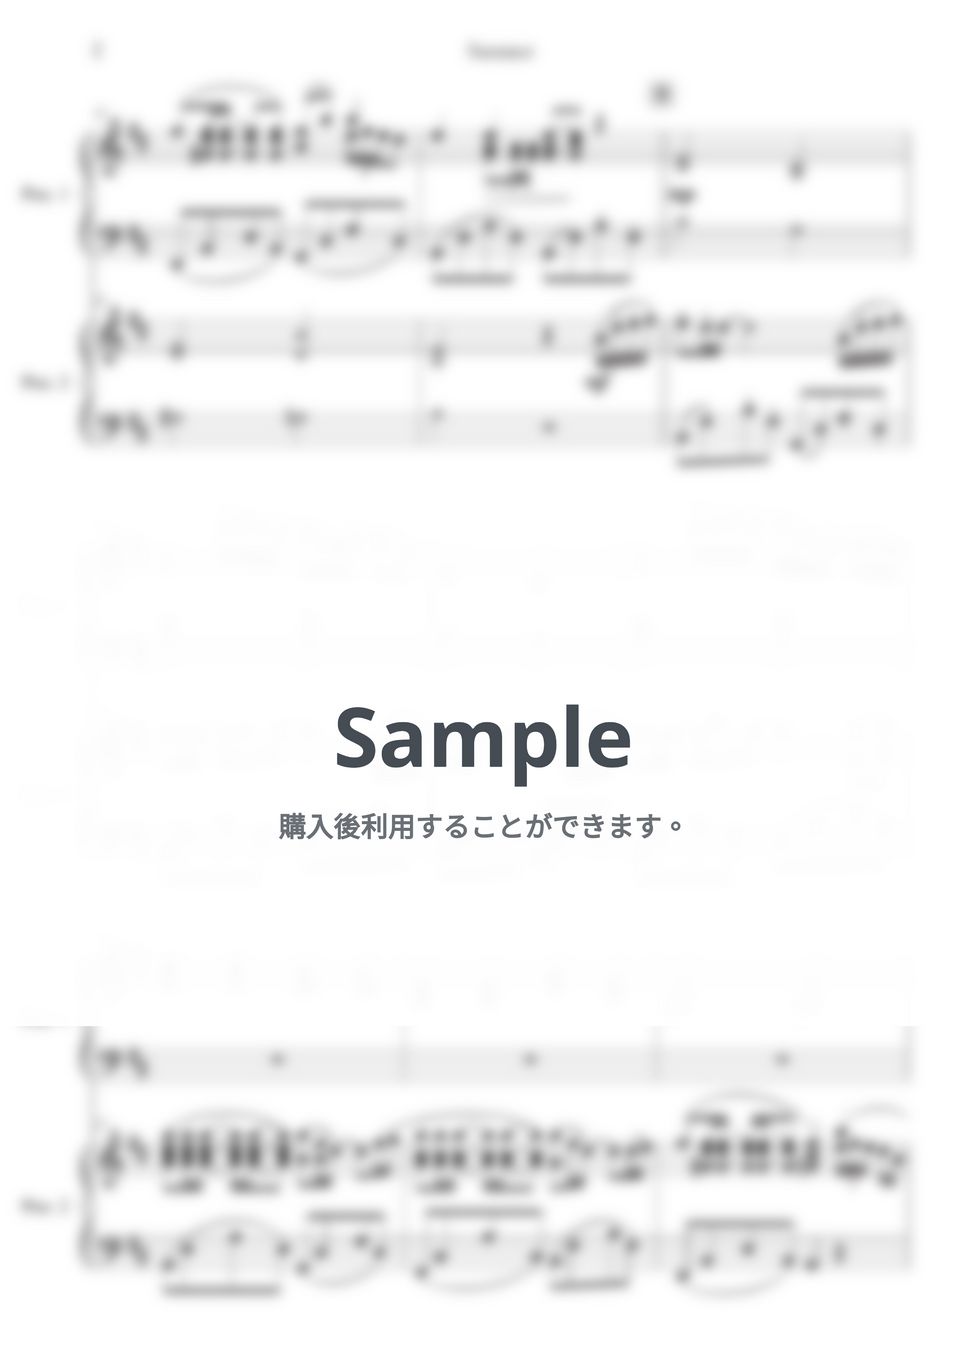 久石譲 - Summer for 2 Piano (原典版) by 楊思緯